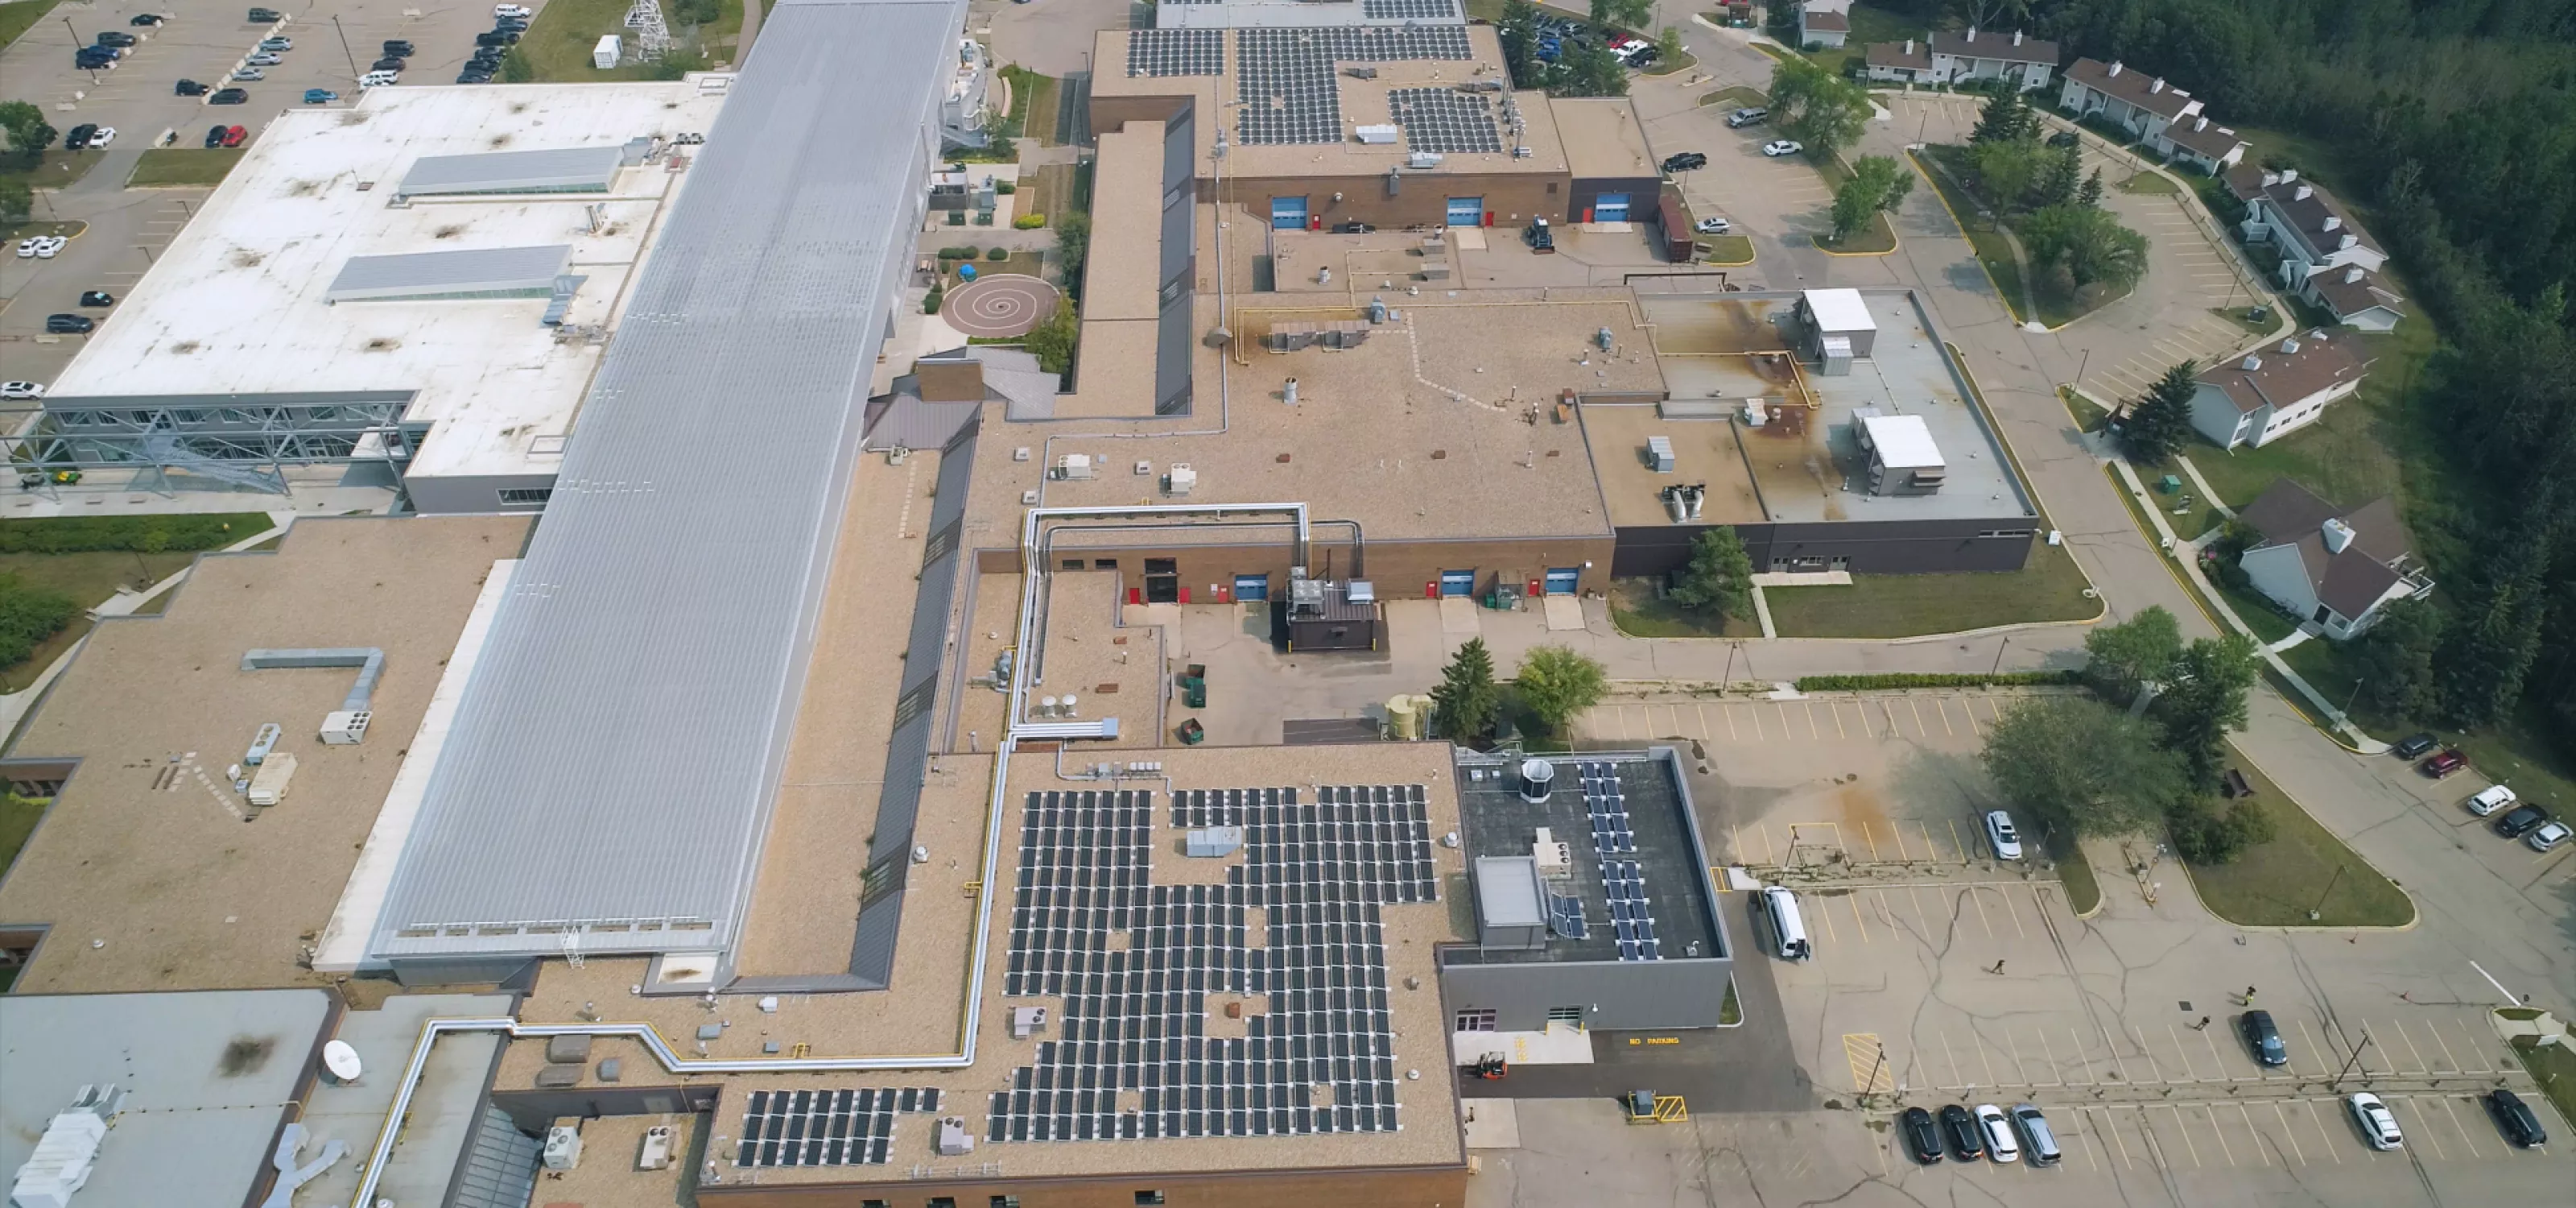 Solar energy array on RDP's Rooftop